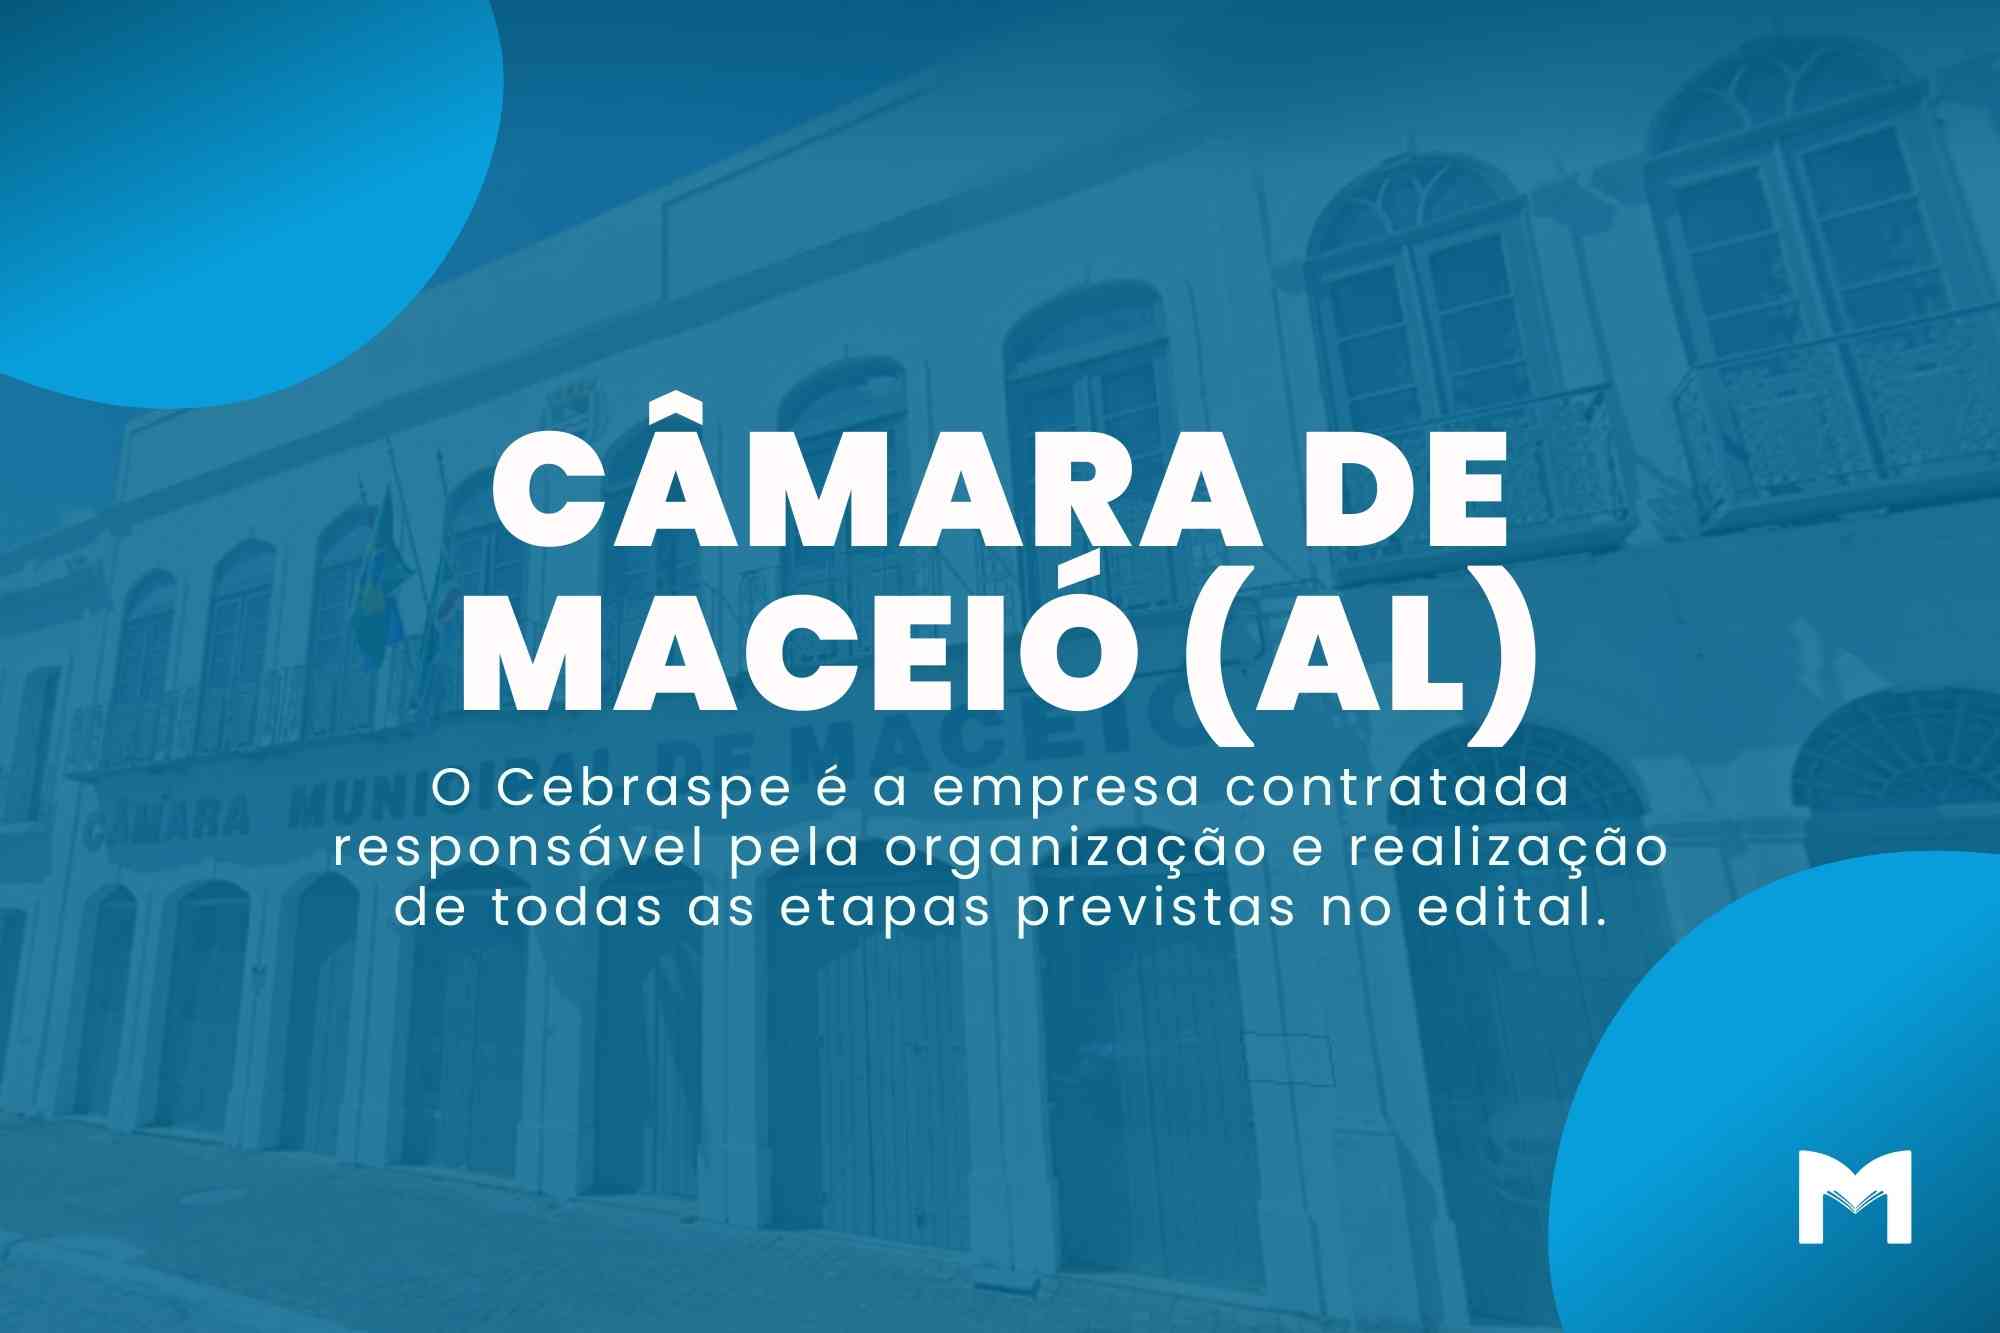 Câmara de Maceió AL: Inscrições para o Concurso Terminam Hoje!